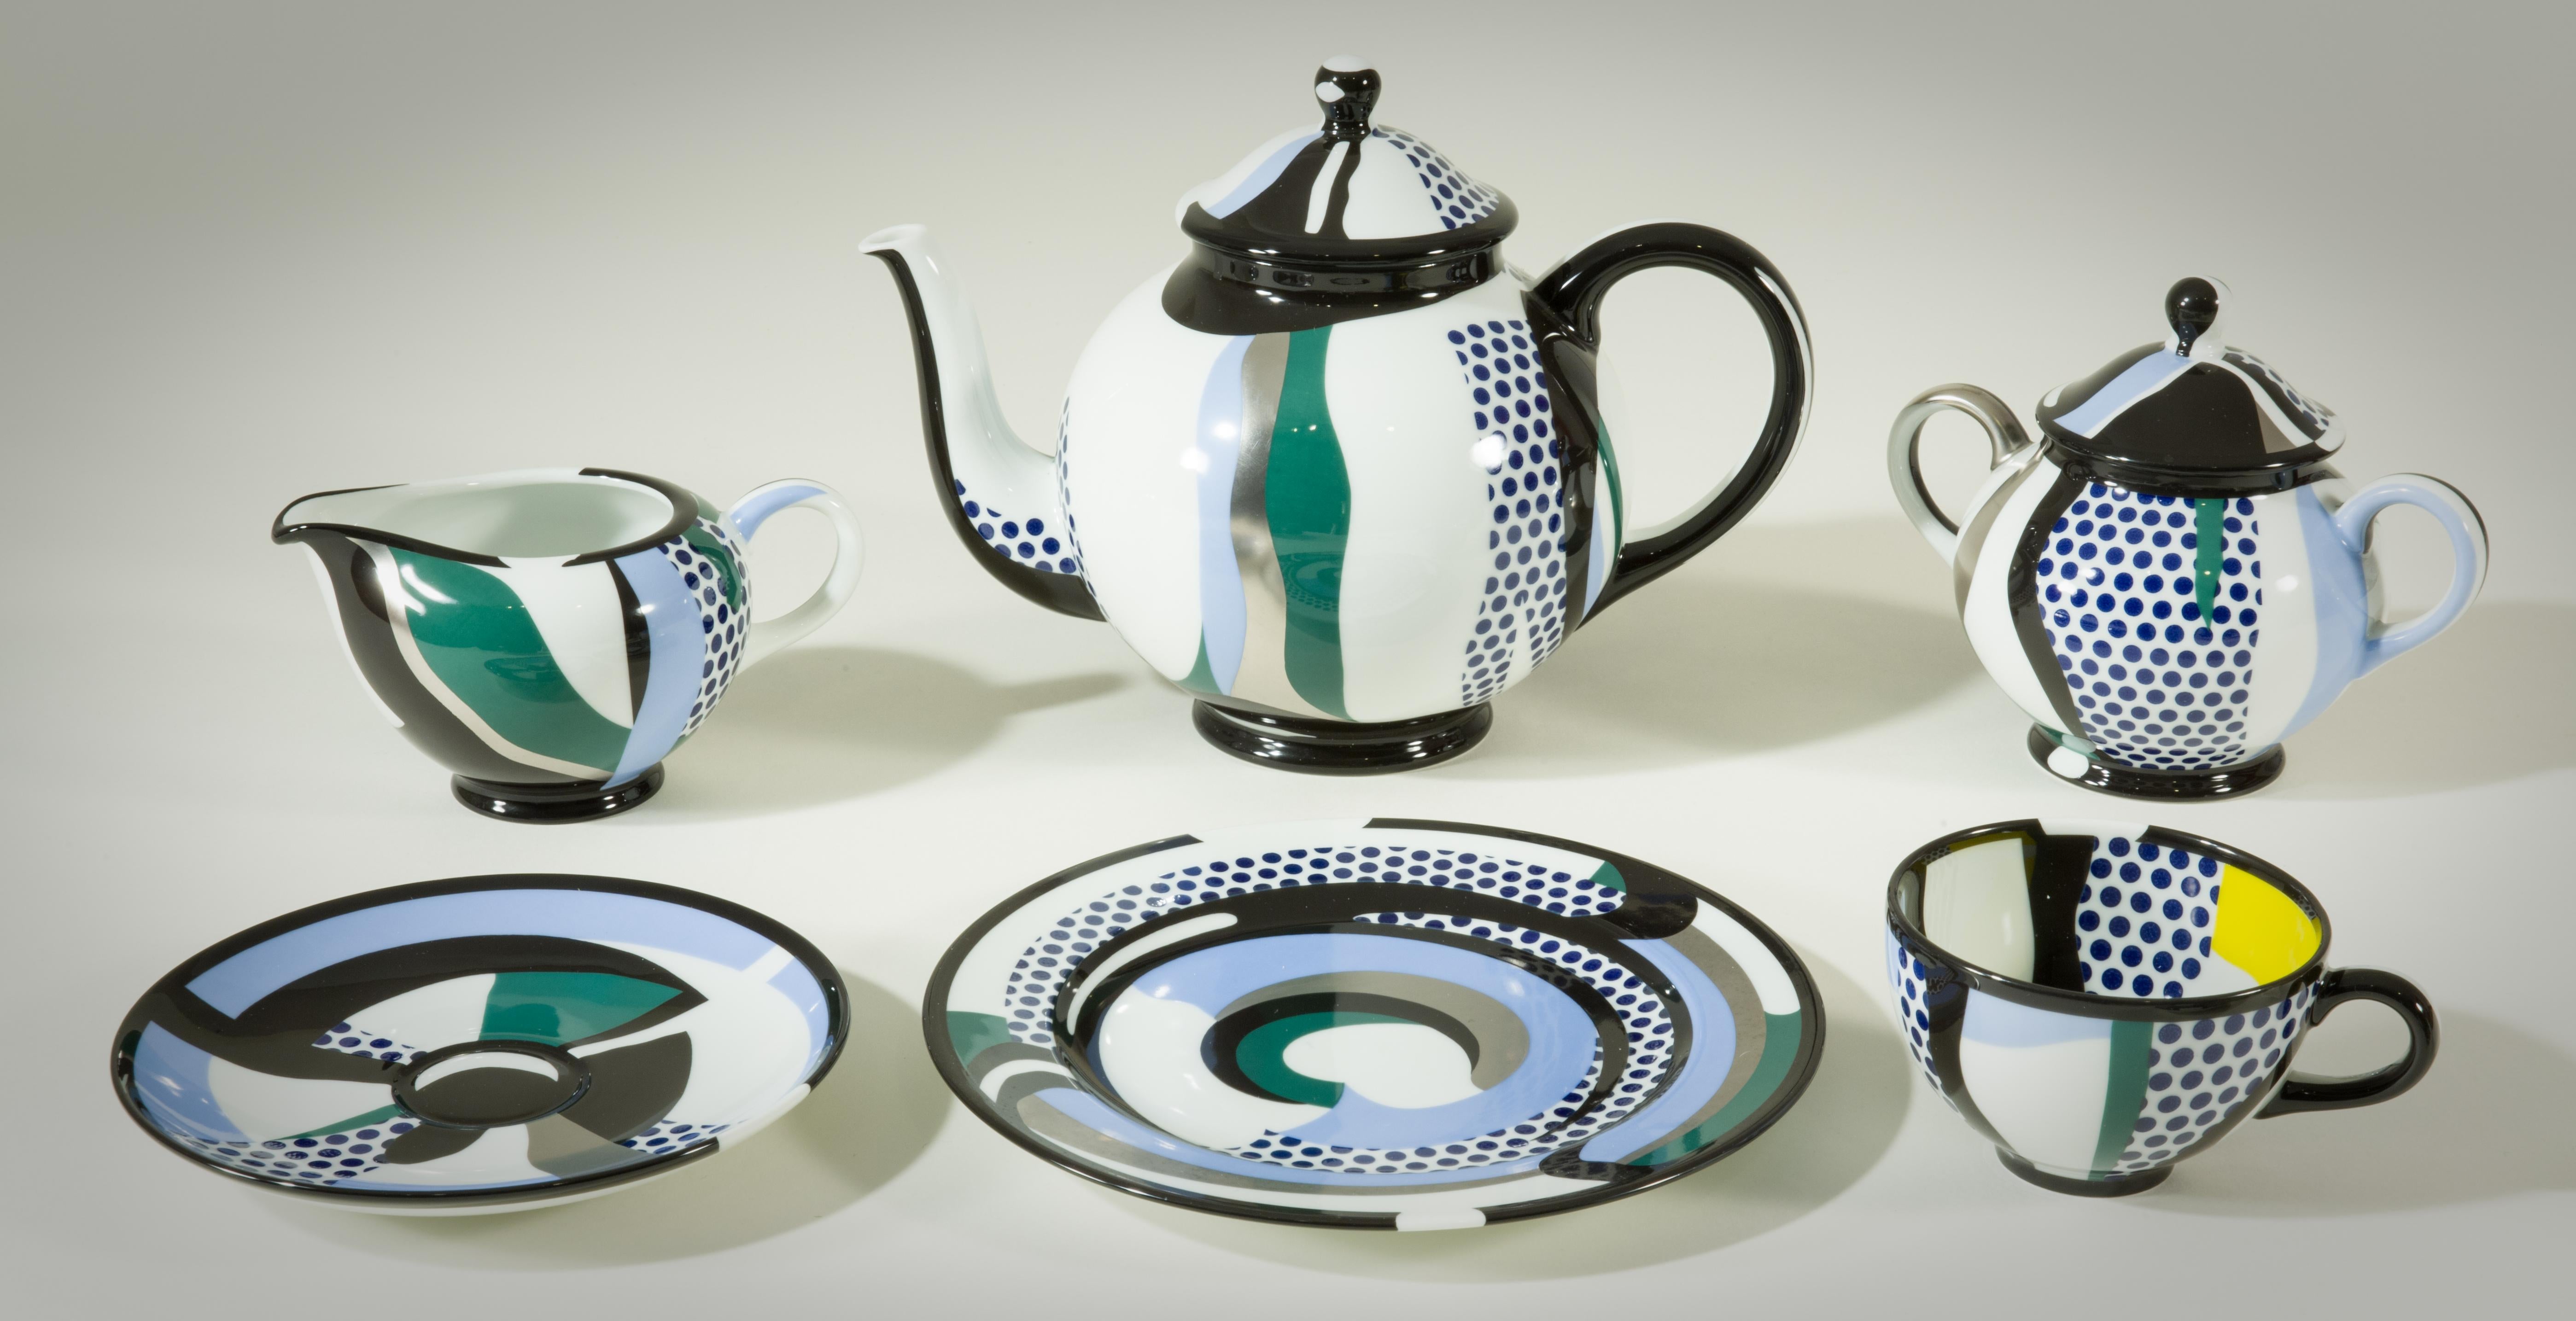 Rosenthal Tea Set - Mixed Media Art by Roy Lichtenstein